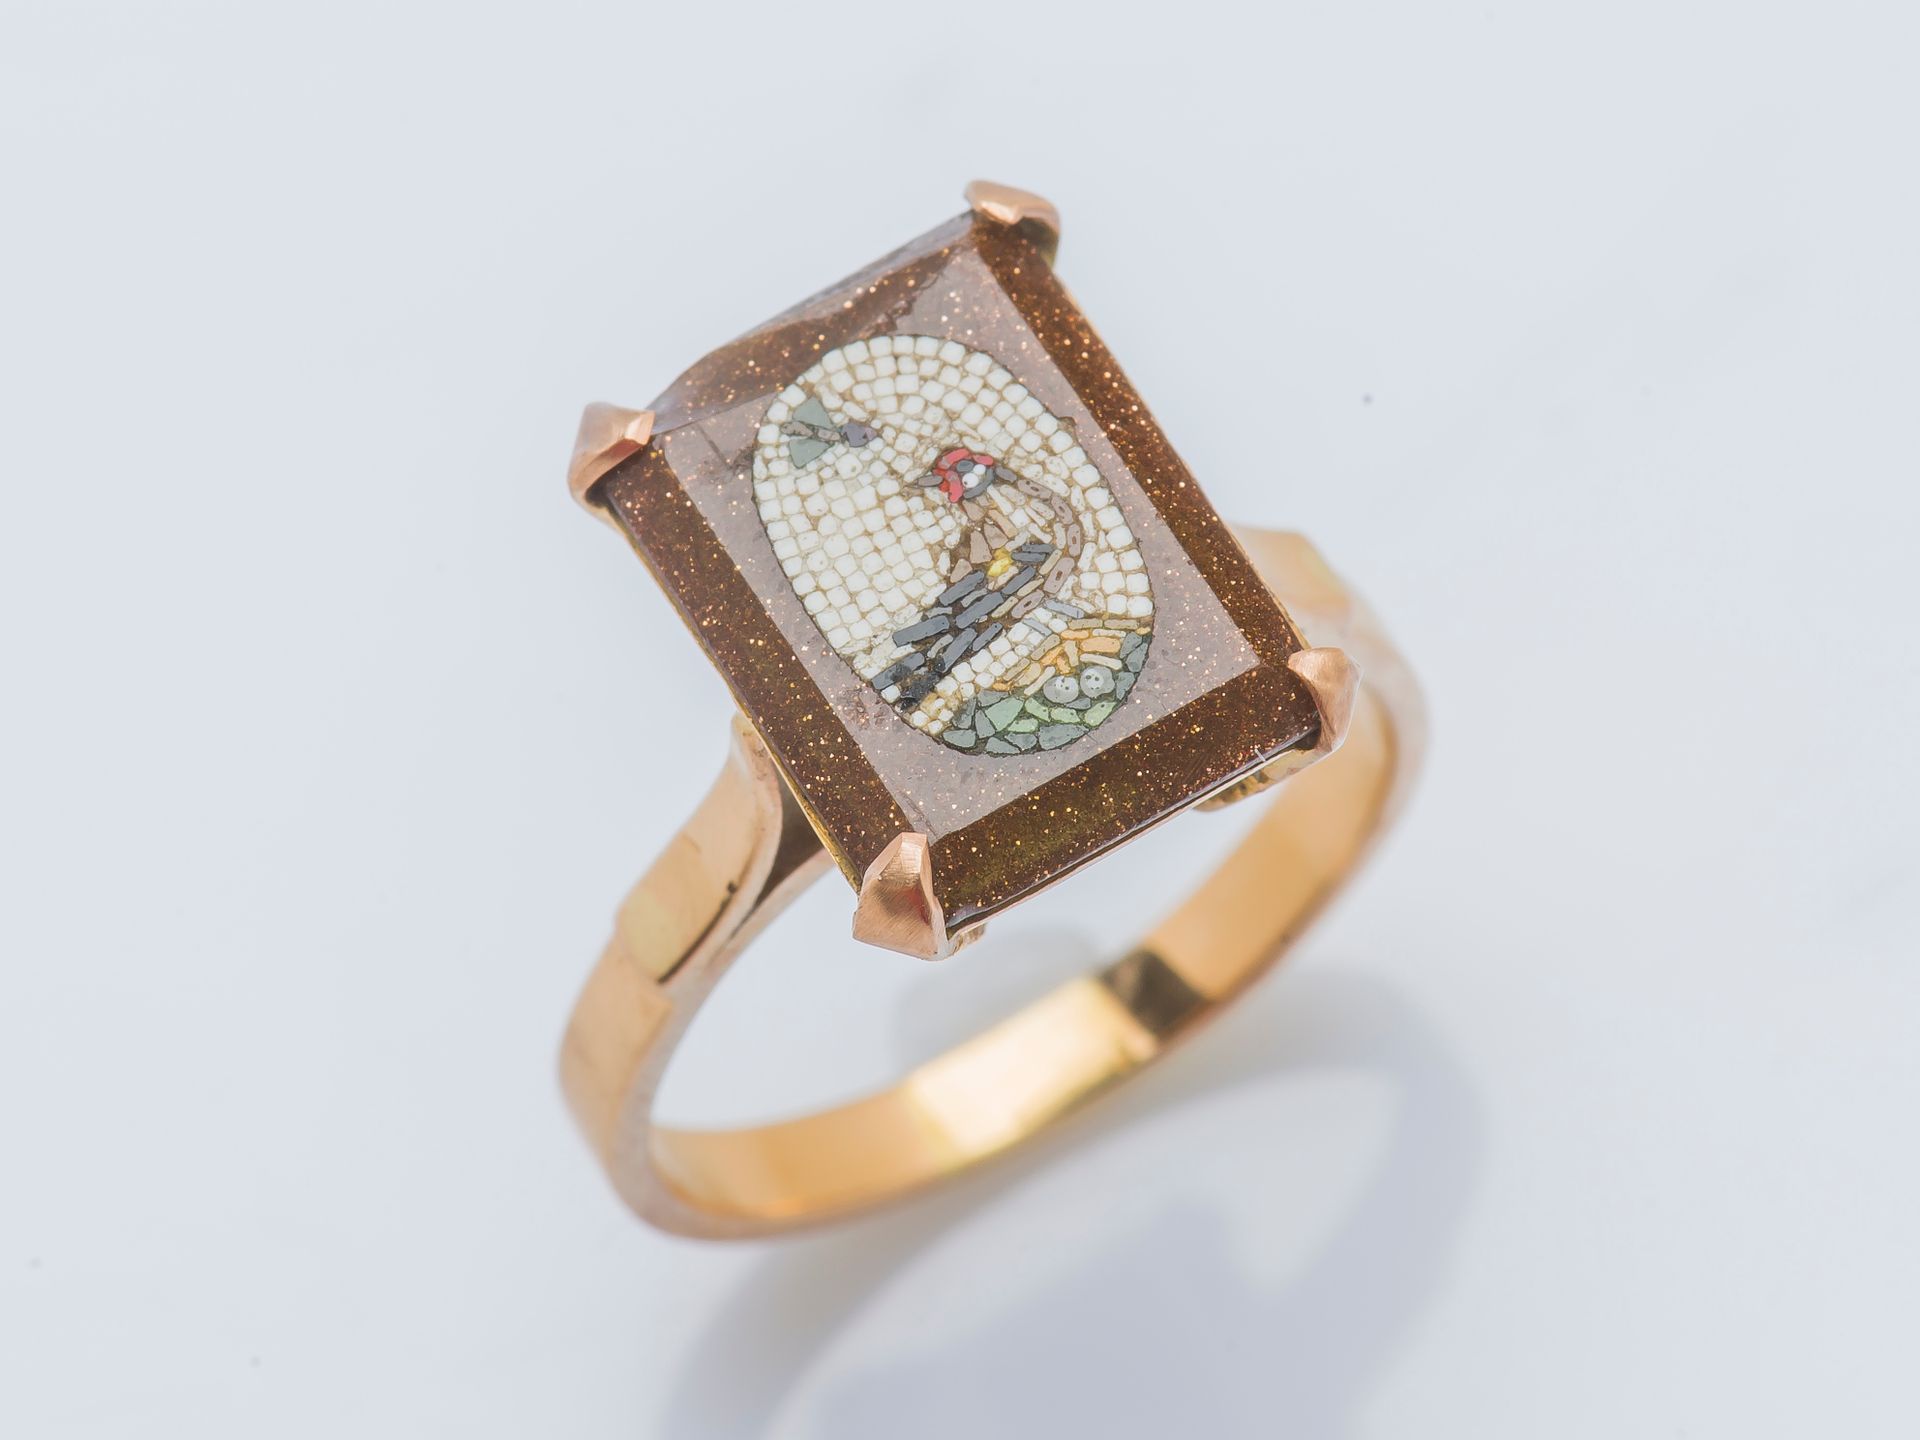 Null 18K黄金（750‰）戒指上镶嵌着一个长方形的微型马赛克，描绘着太阳花石背景上的一只鸟。

手指大小：56 总重量：4.8克